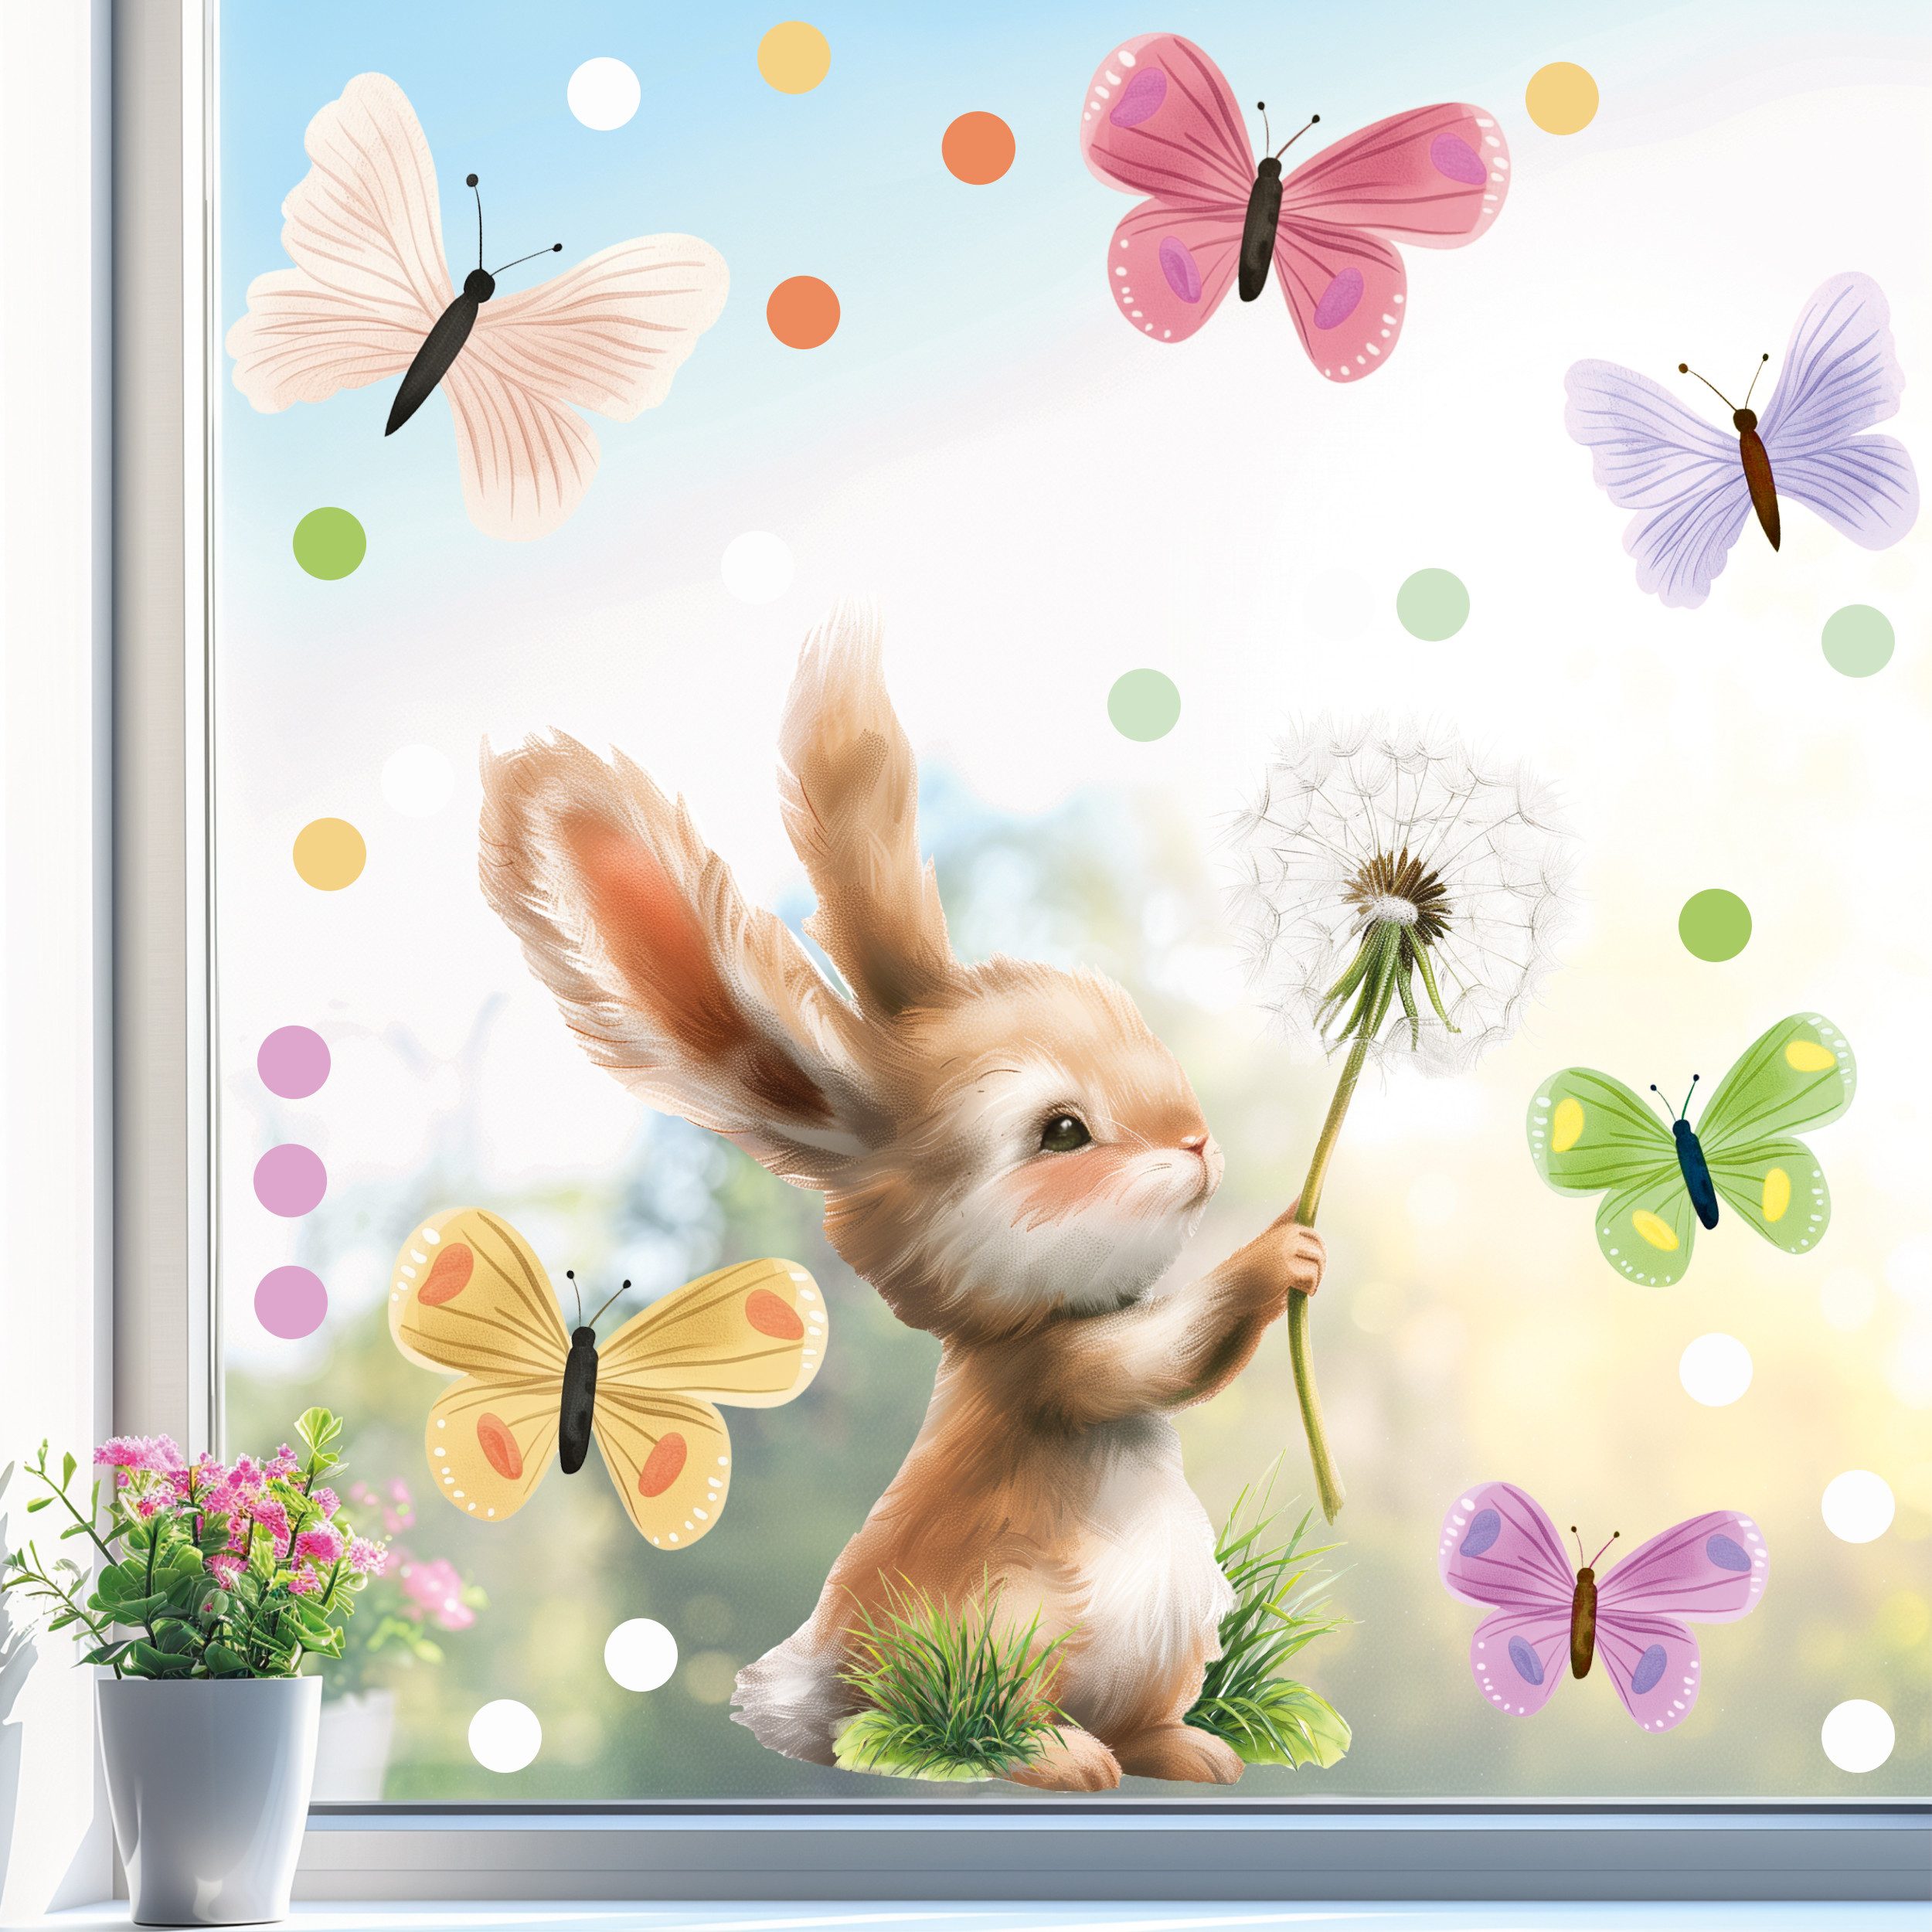 Sunnywall Fensterdekoration wiederverwendbare Fensterbilder Hase Pusteblume Schmetterlinge, wiederverwendbar, statisch haftend, beidseitiger Druck, nachhaltig